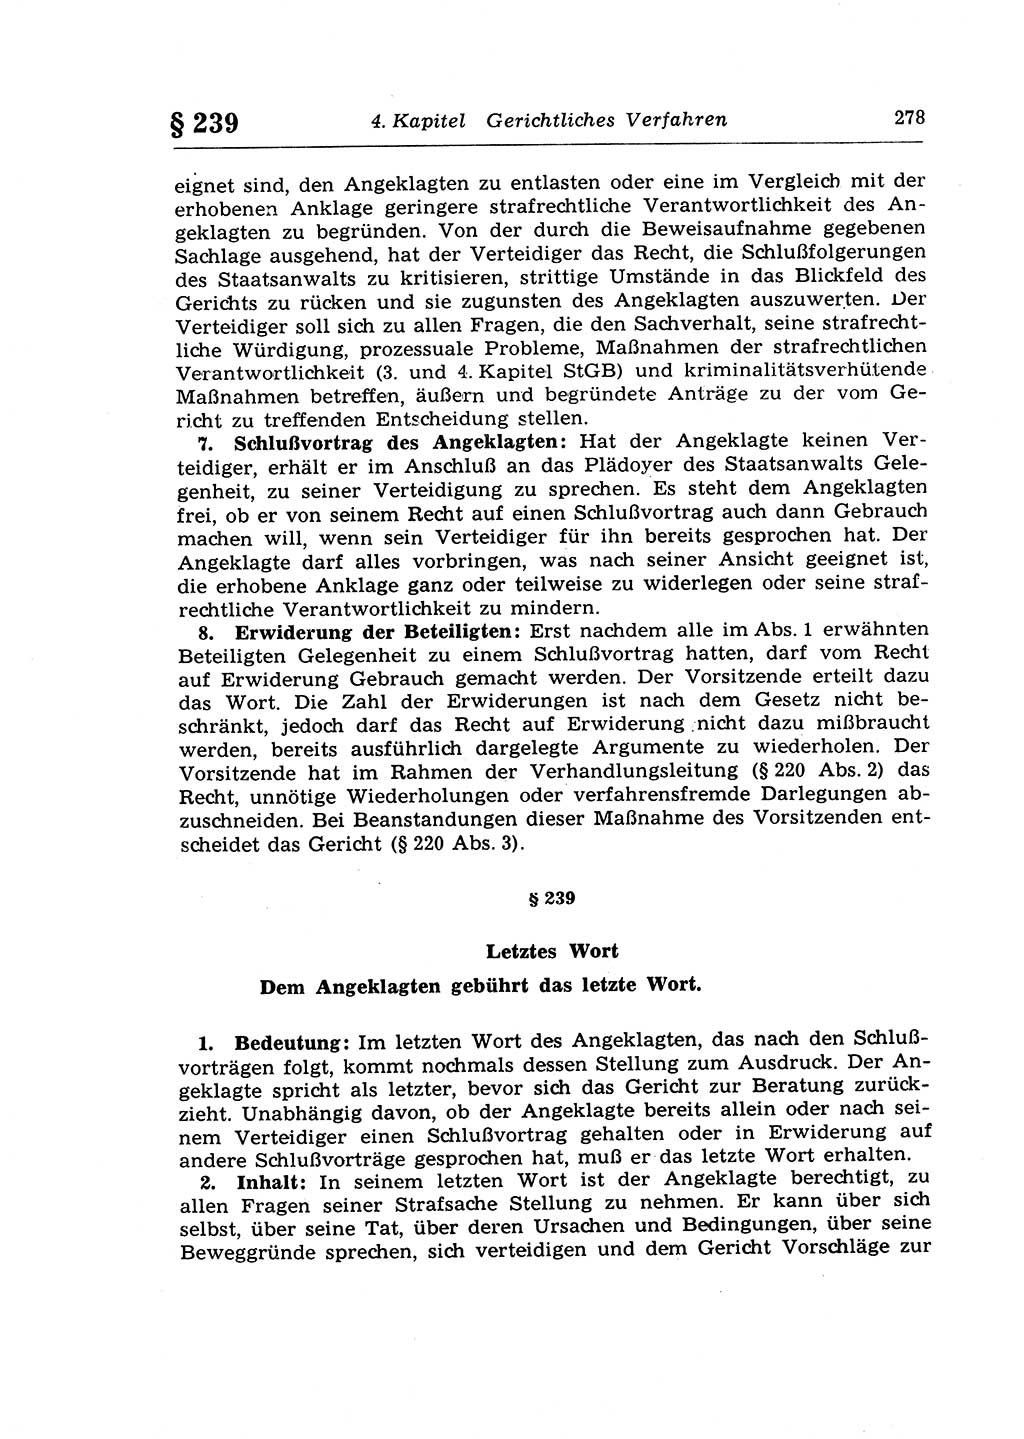 Strafprozeßrecht der DDR (Deutsche Demokratische Republik), Lehrkommentar zur Strafprozeßordnung (StPO) 1968, Seite 278 (Strafprozeßr. DDR Lehrkomm. StPO 19688, S. 278)